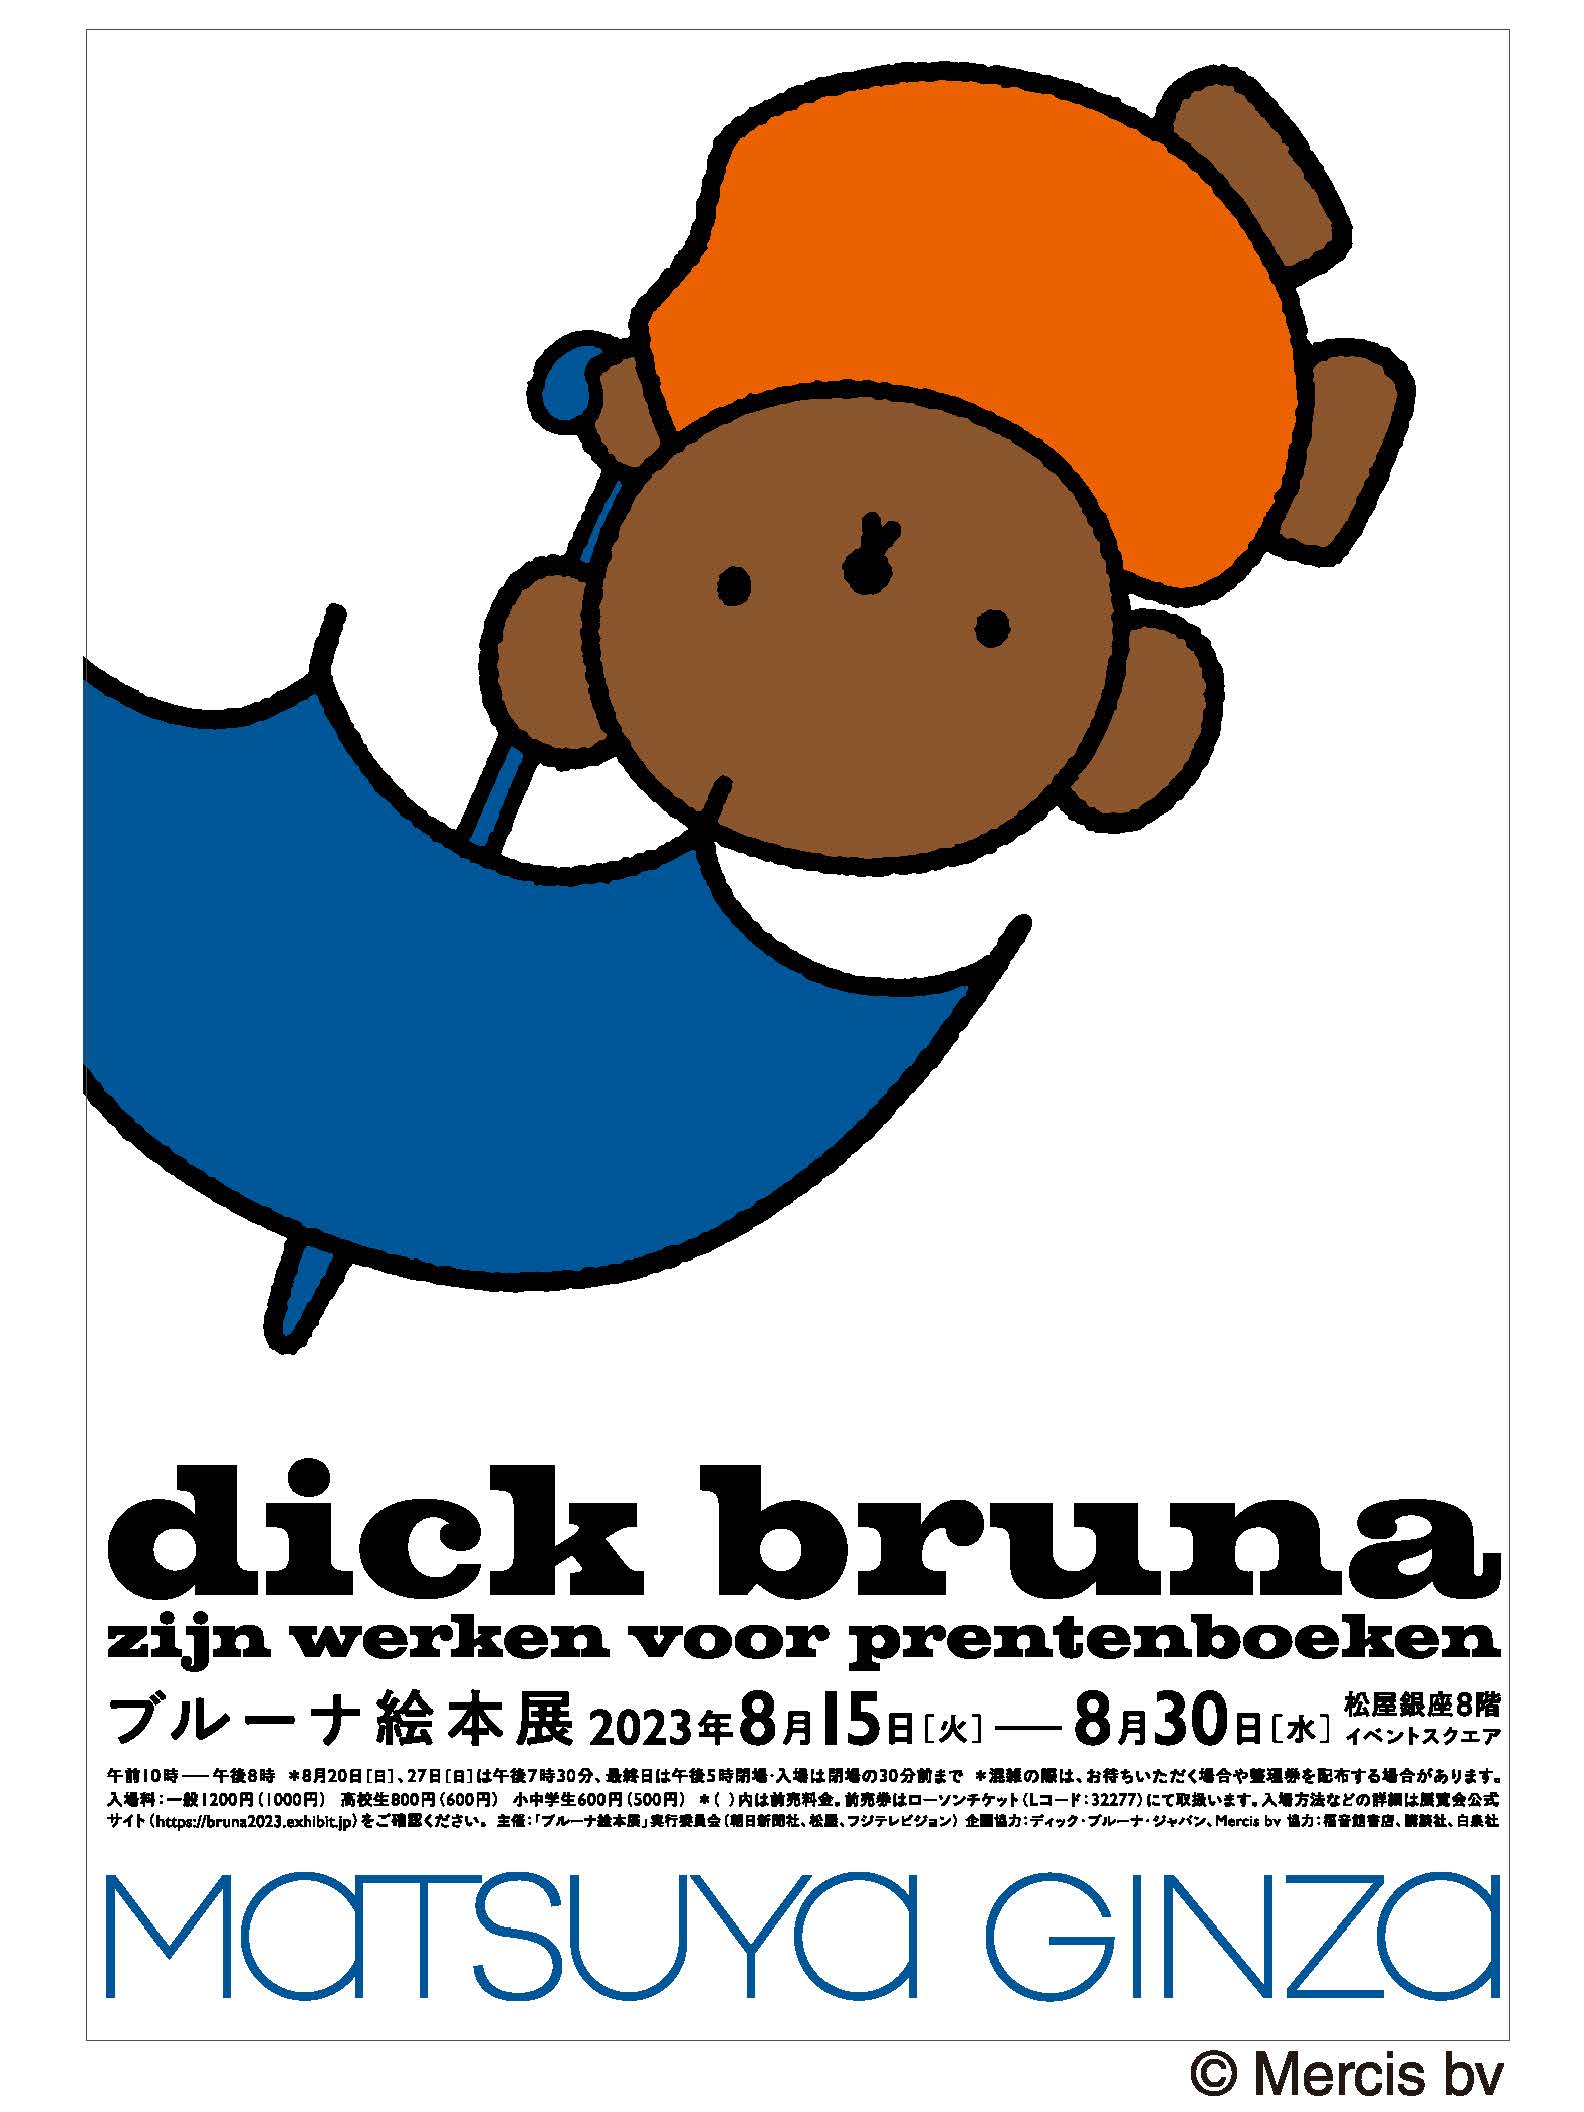 Dick Bruna posterディックブルーナ ビンテージポスターミッフィー ...